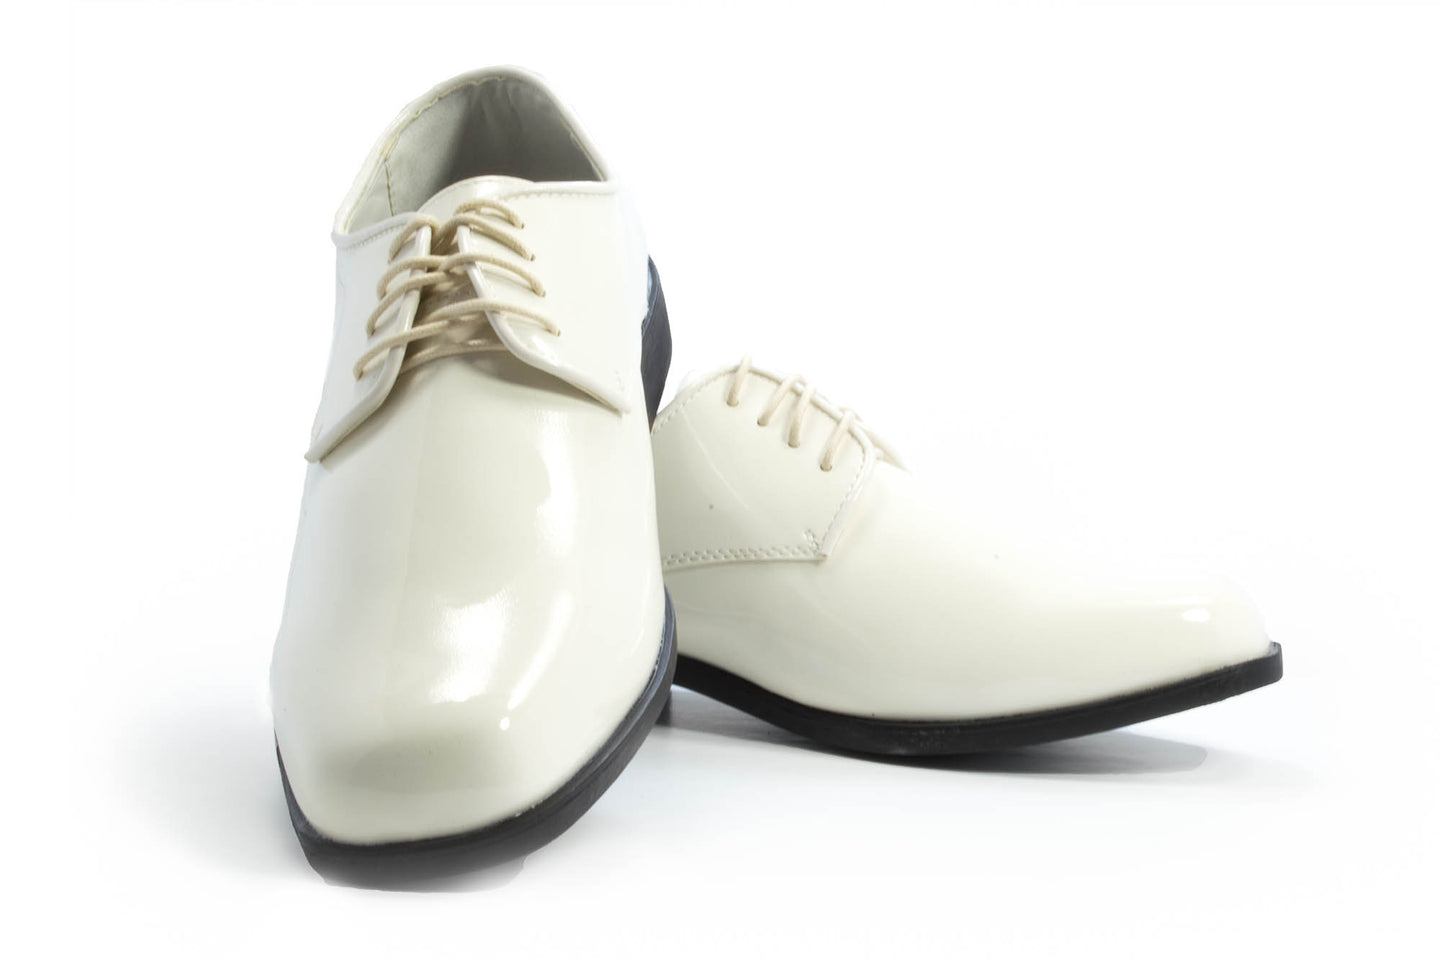 Revolution - Gloss Ivory Tuxedo Shoe